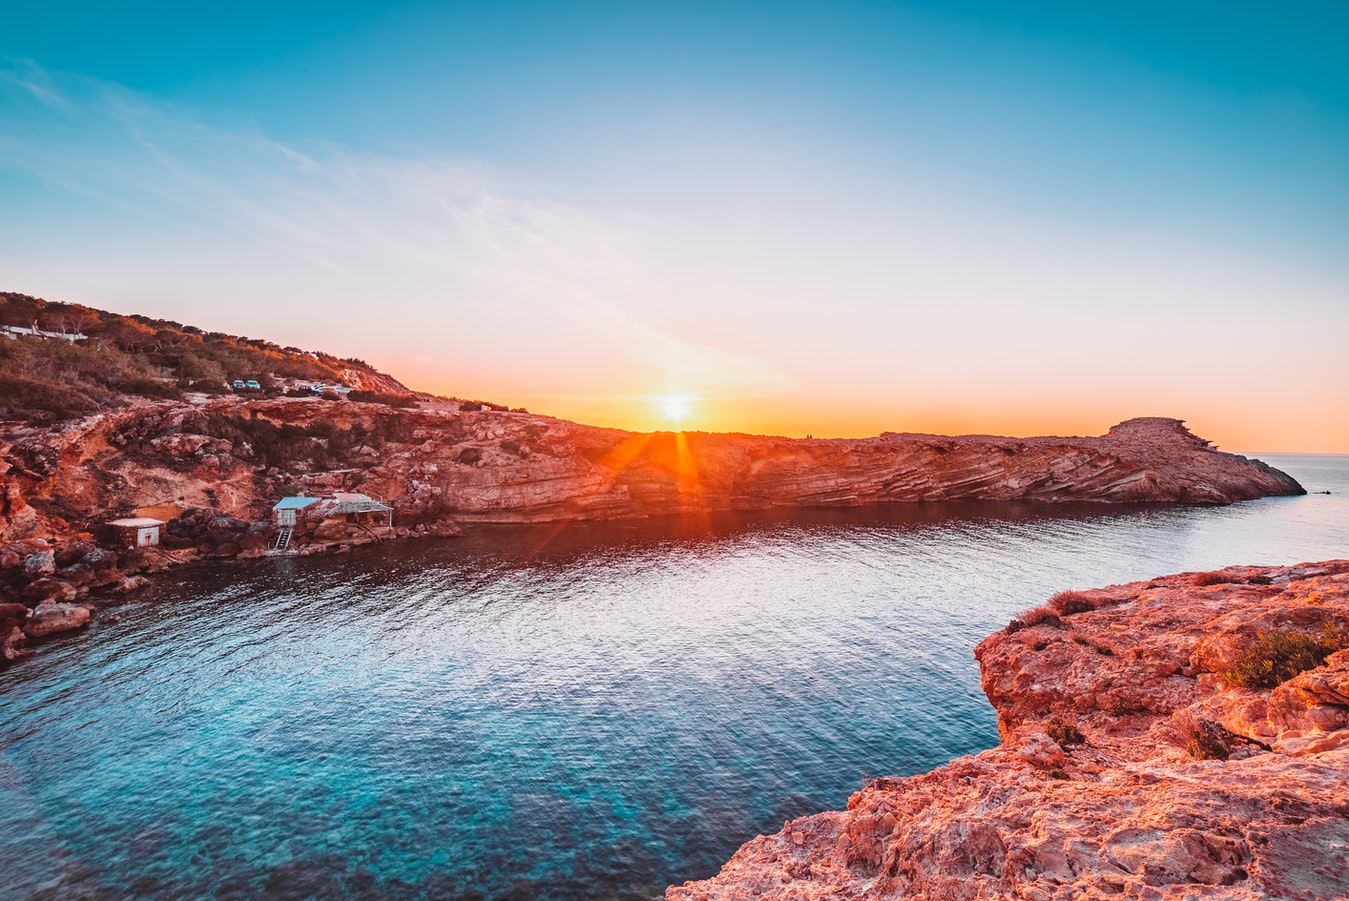 Huur een vakantiewoning in het zonnige Ibiza